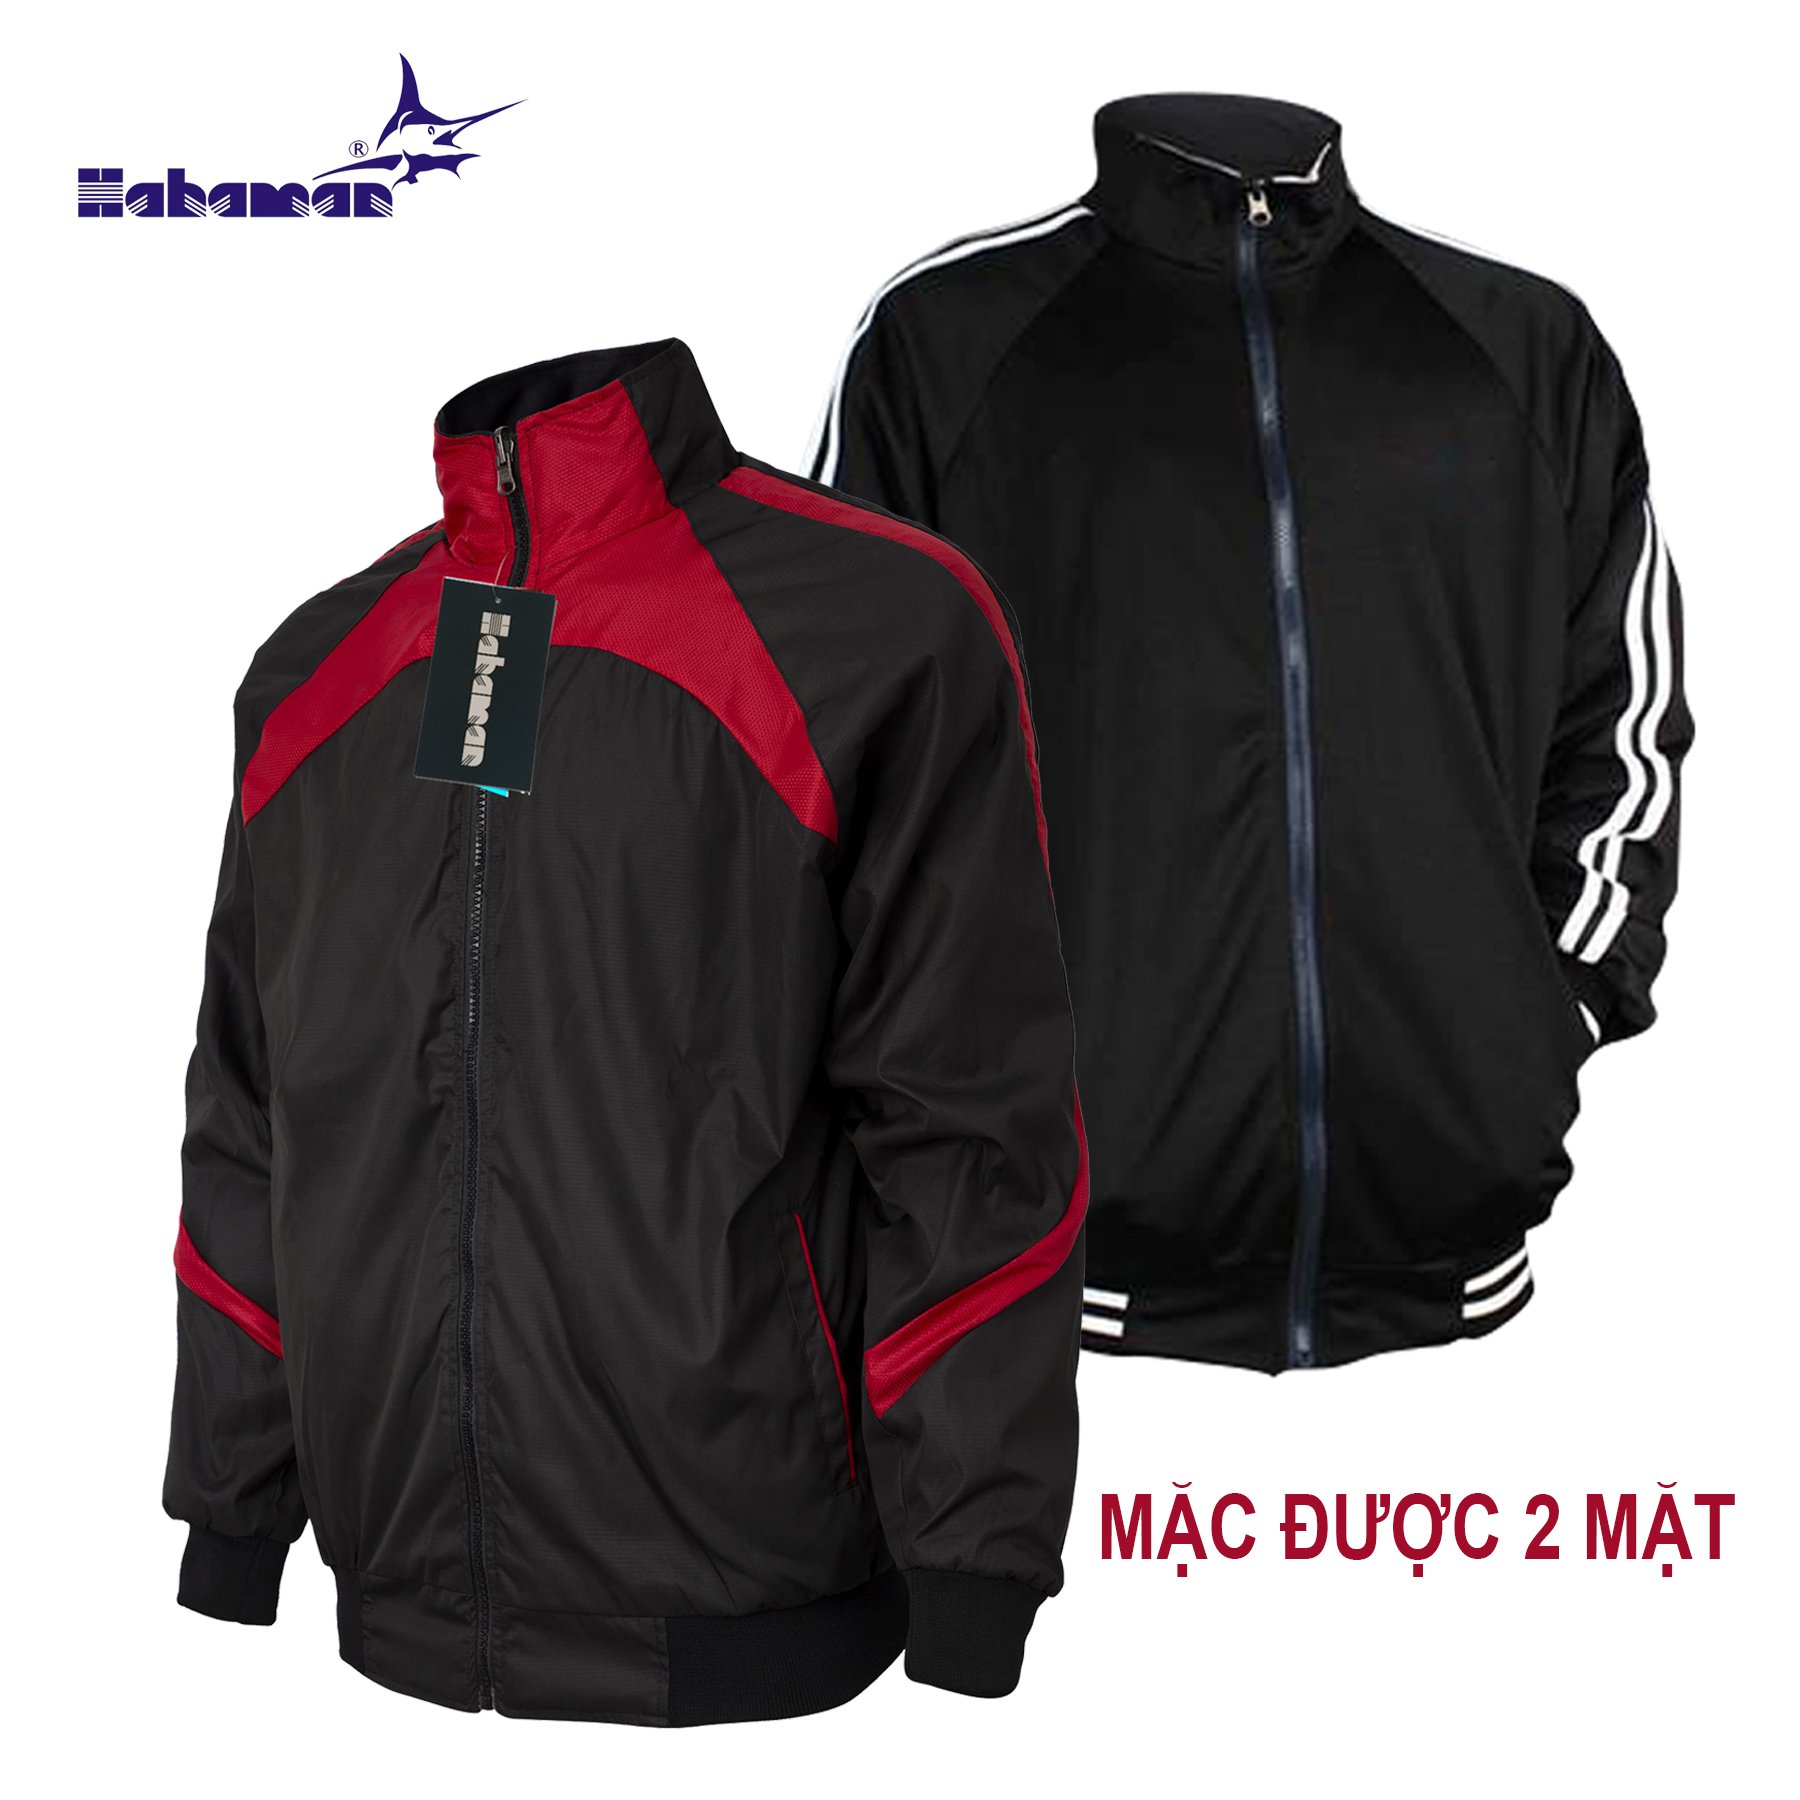 Áo khoác dù nam HAHAMAN mặc 2 mặt phối màu chống thắm giữ ấm AKD2M2001